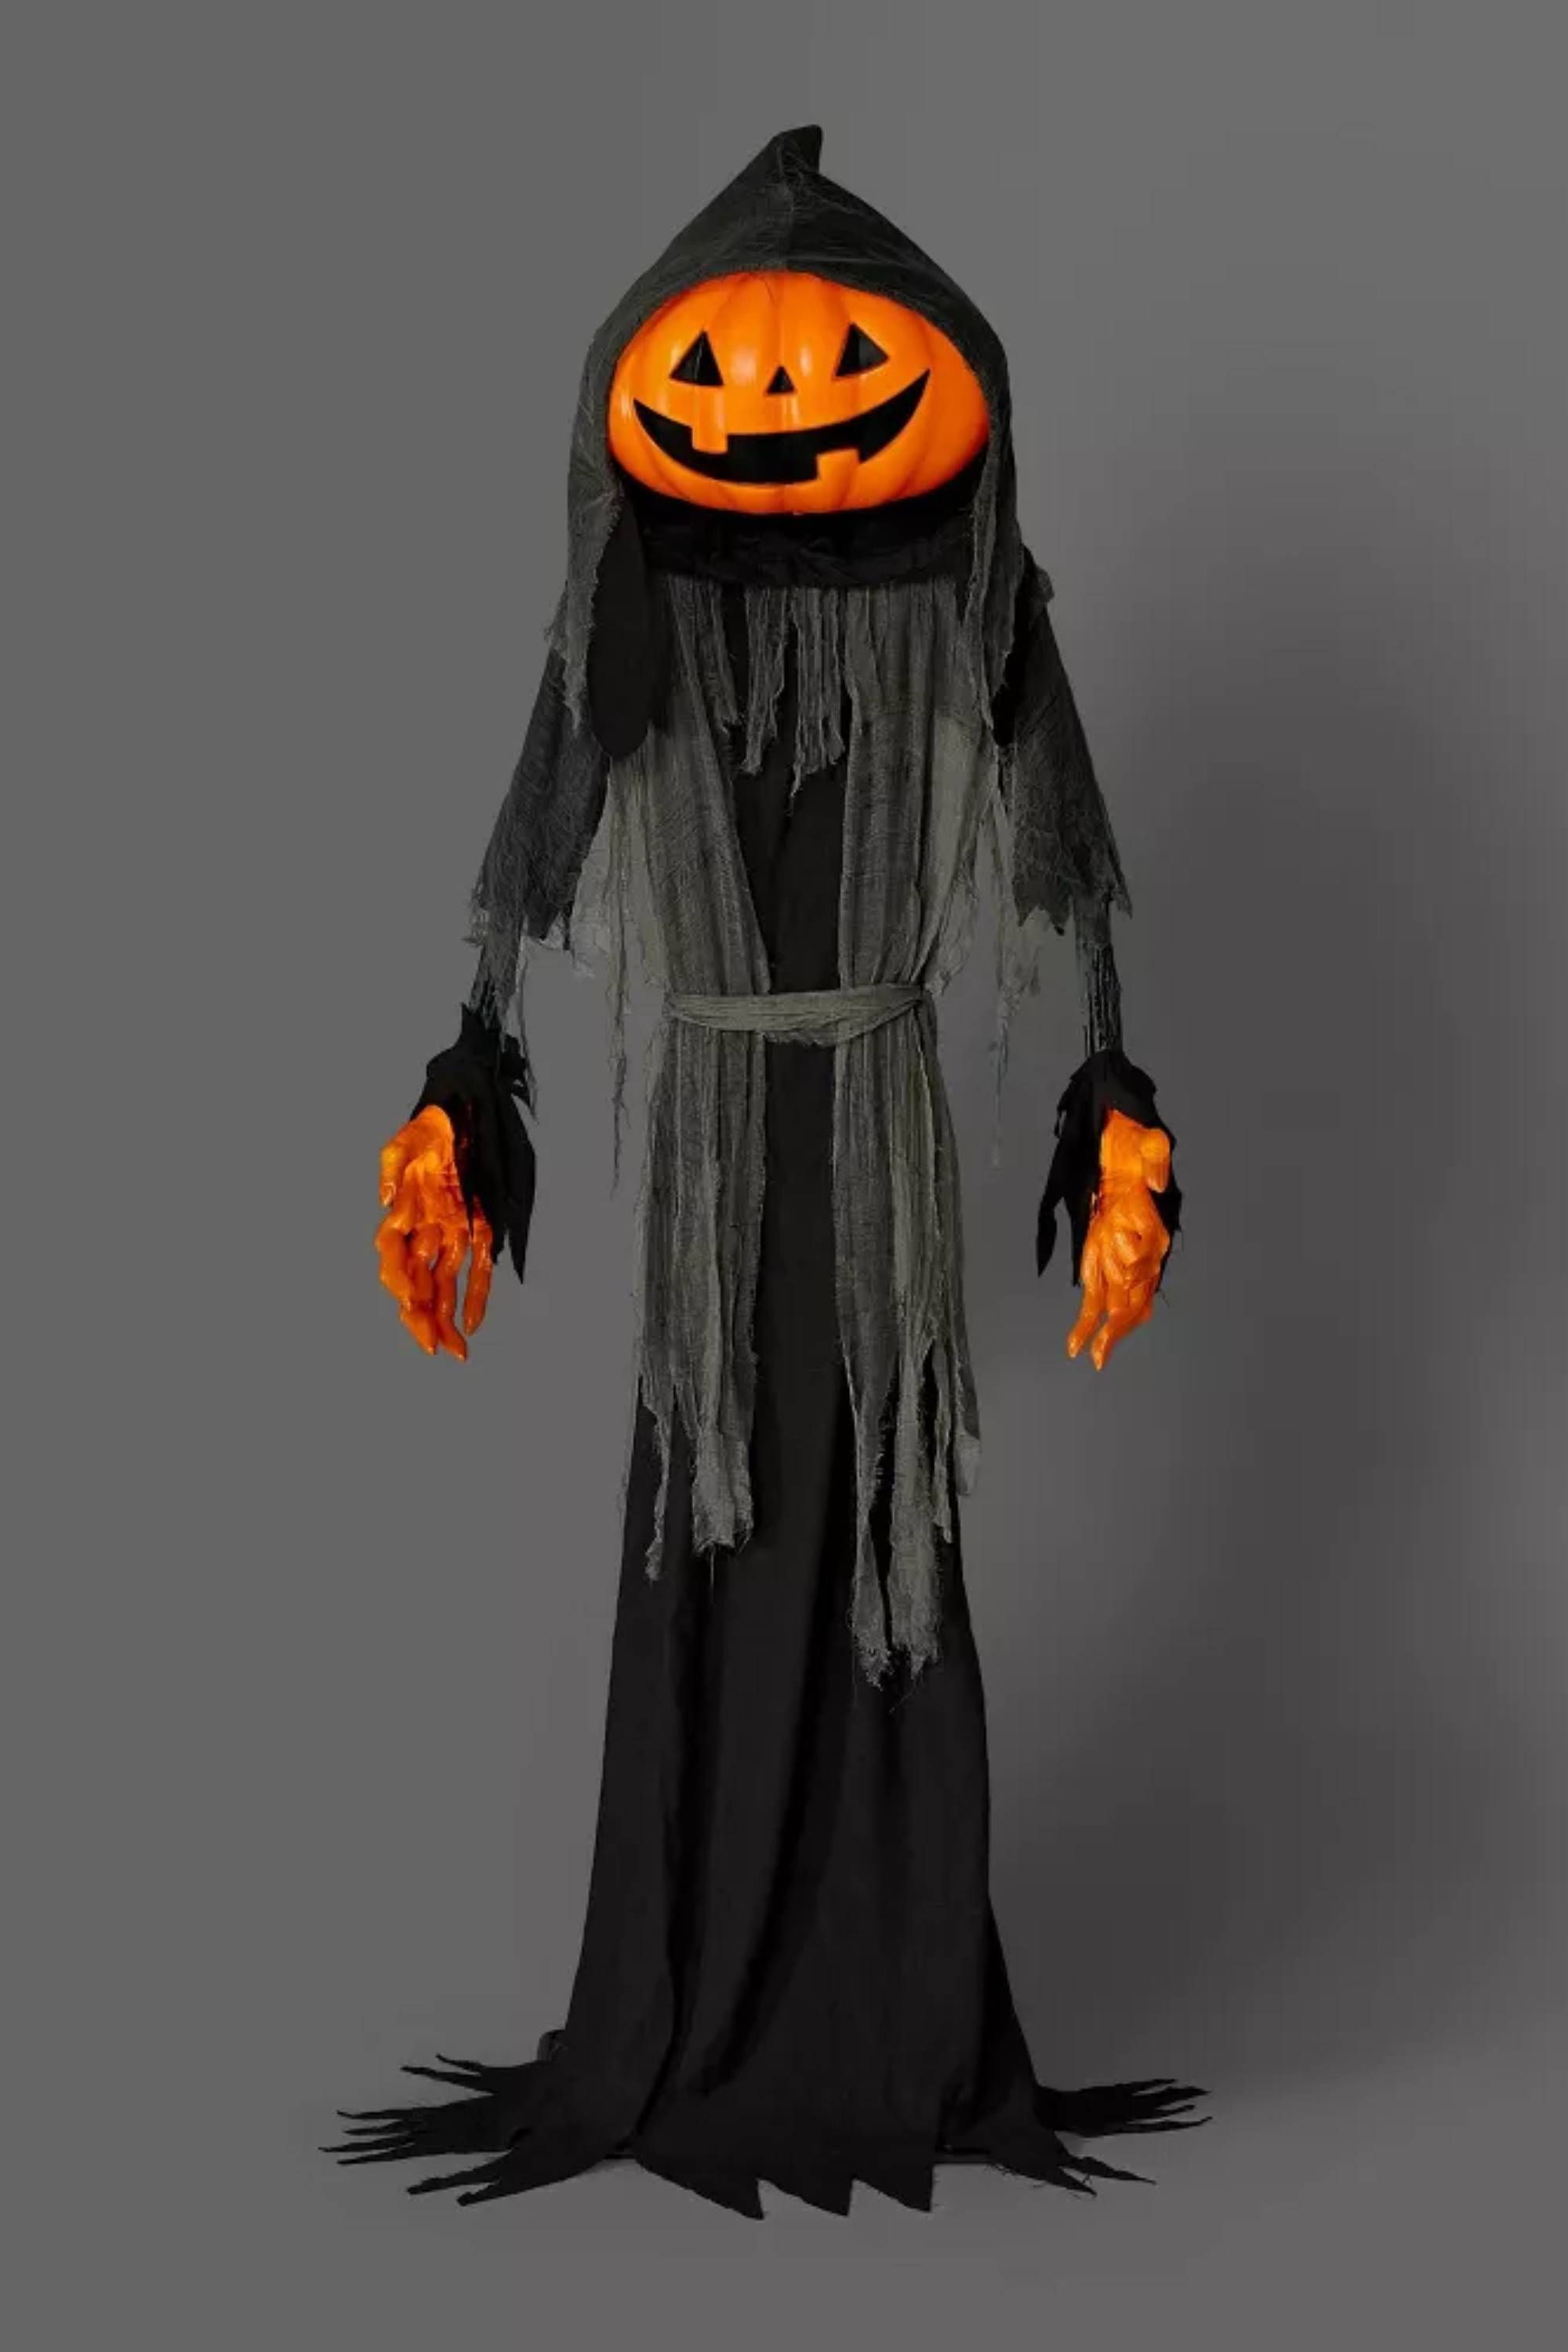 8' Light and Sound Pumpkin Halloween Ghoul